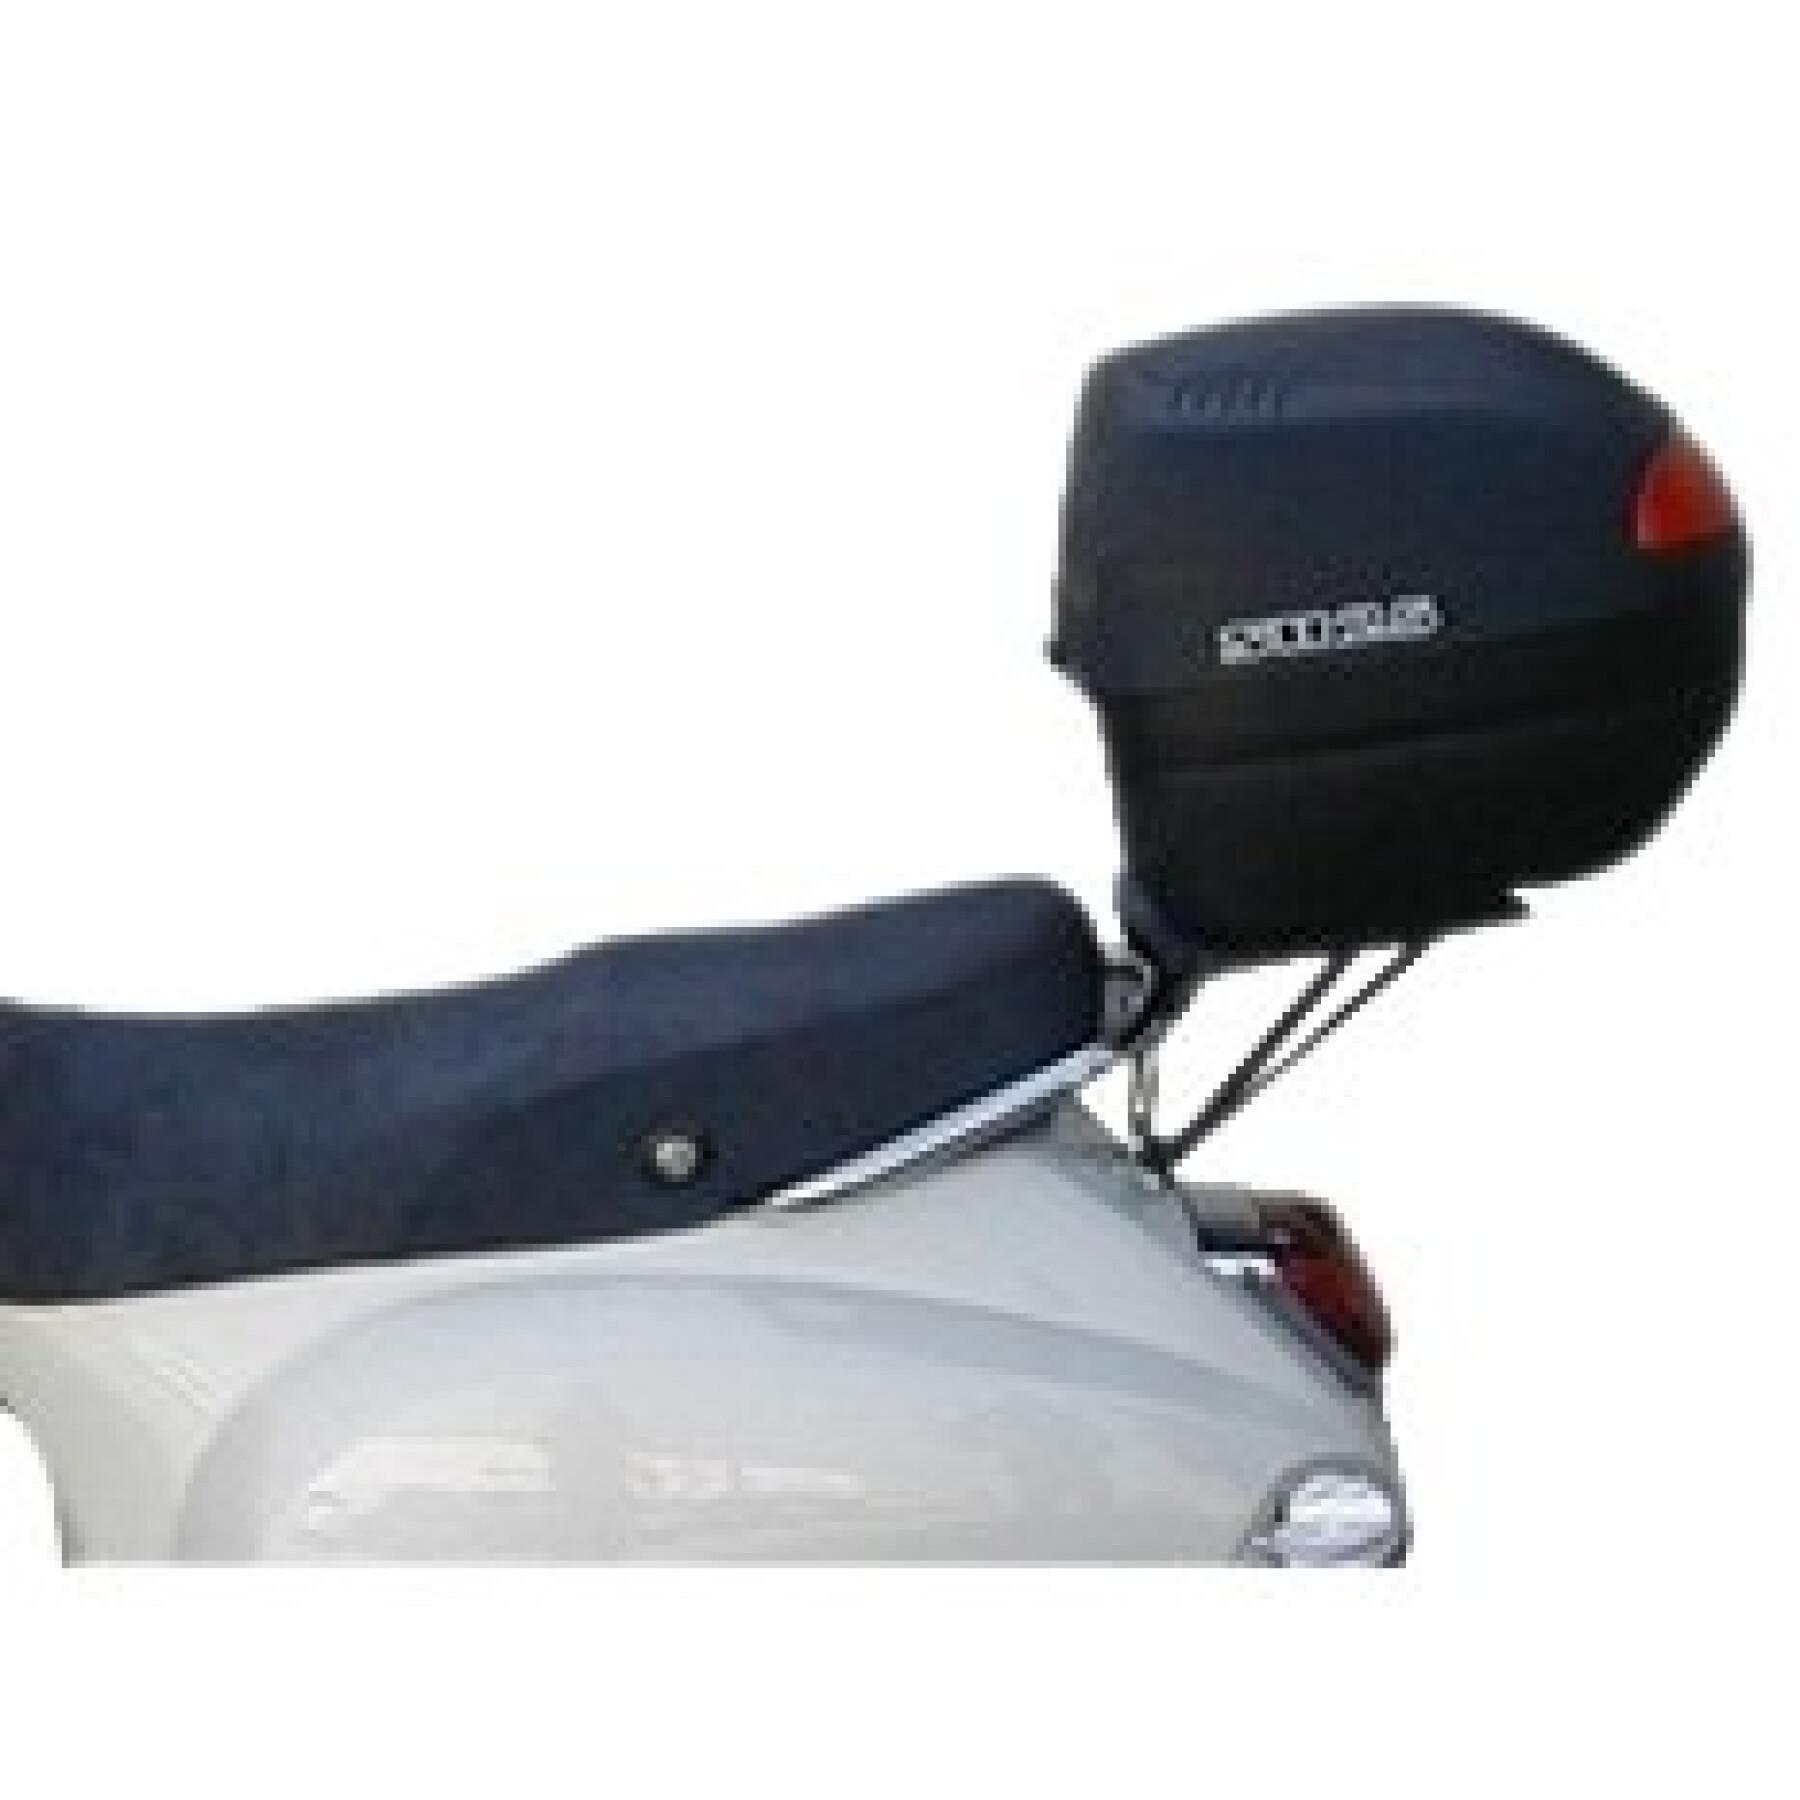 Supporto bauletto scooter Shad Piaggio 50/125 LX (da 05 a 14)